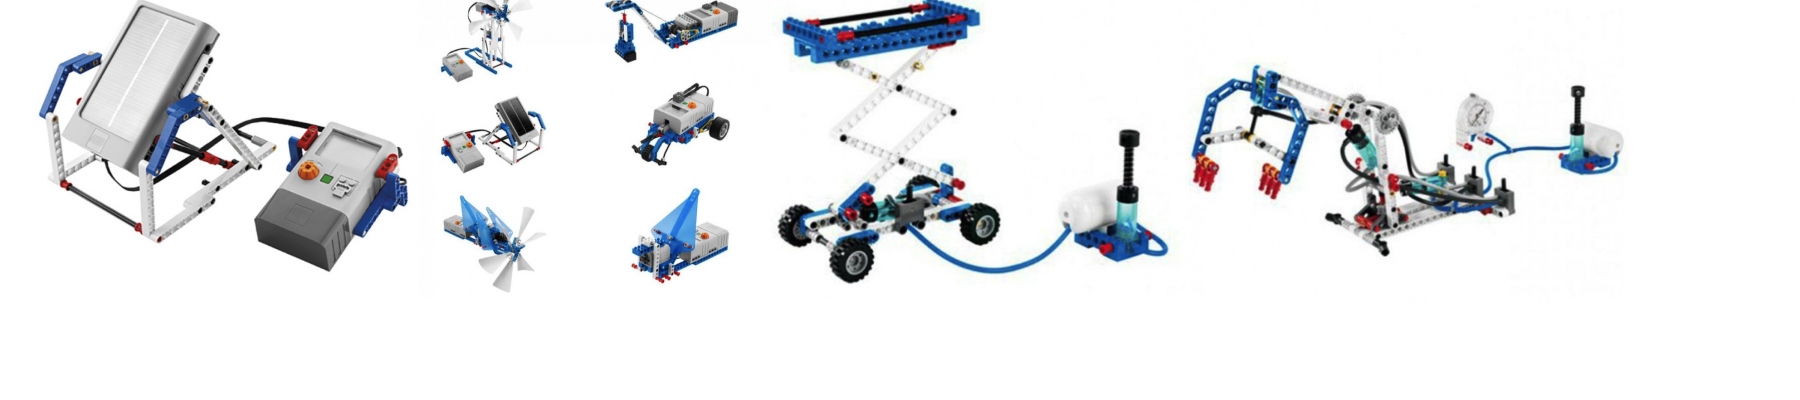 LEGO DUURZAME ENERGIE EN PNEUMATIEK   (15 JUNI)